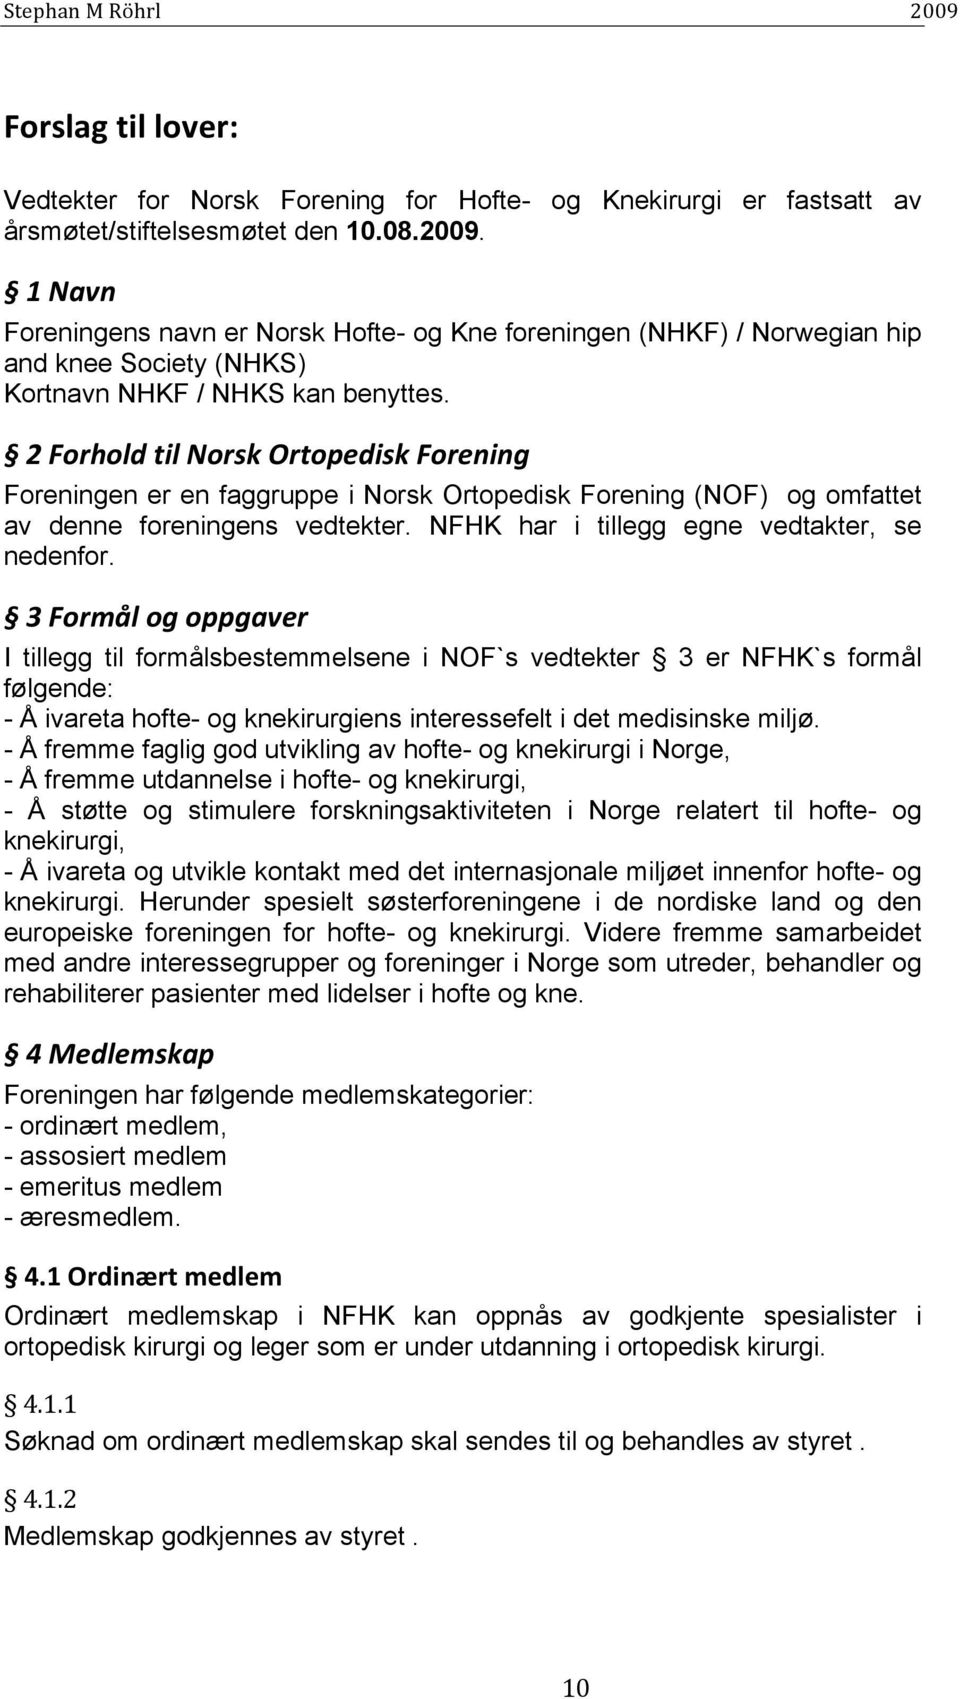 2 Forhold til Norsk Ortopedisk Forening Foreningen er en faggruppe i Norsk Ortopedisk Forening (NOF) og omfattet av denne foreningens vedtekter. NFHK har i tillegg egne vedtakter, se nedenfor.